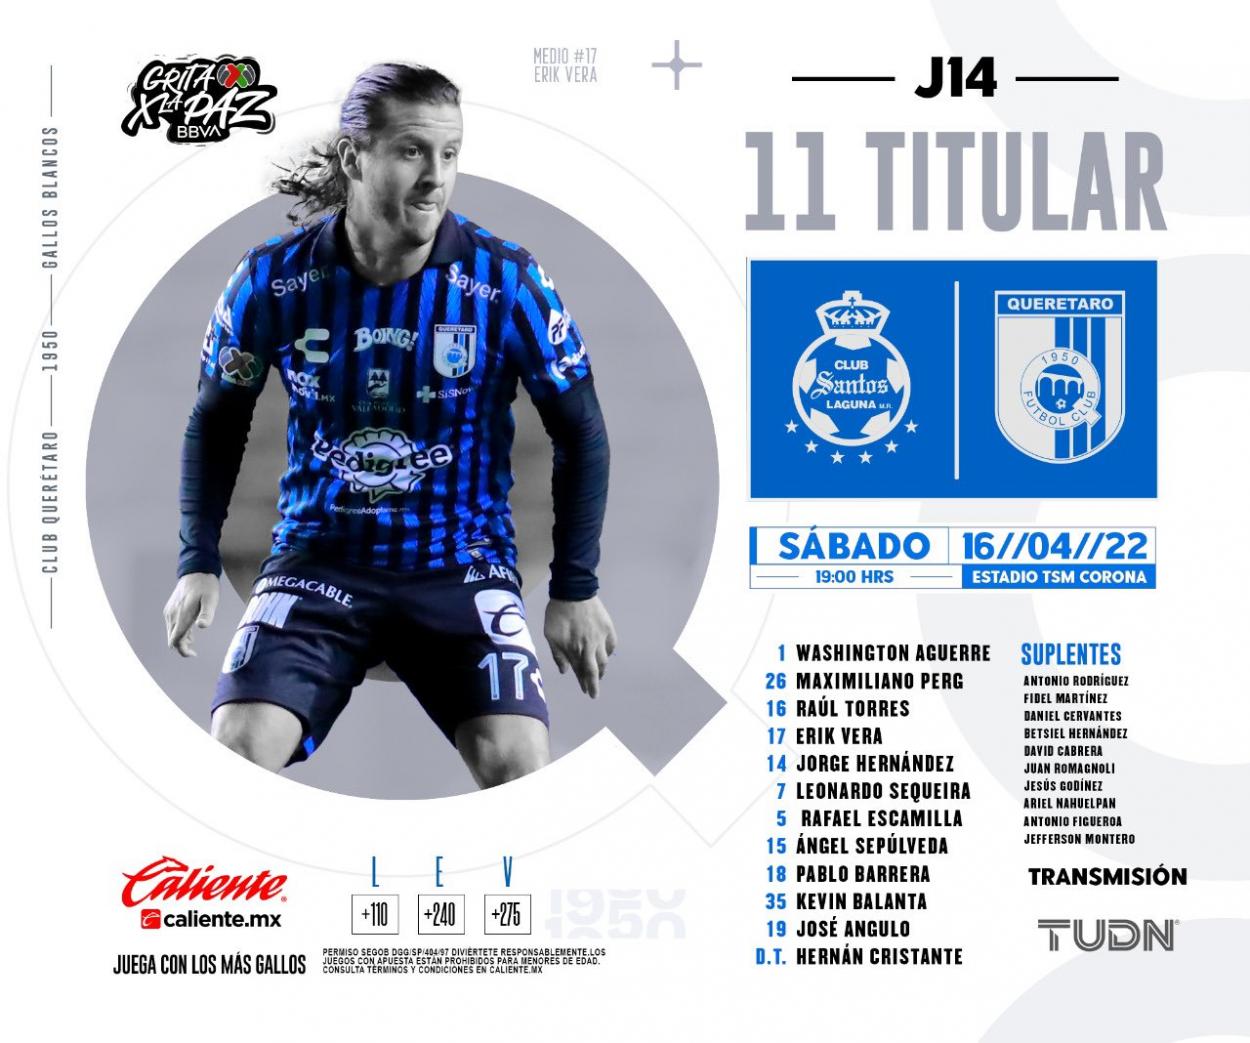 Querétaro Starting XI/Image:Club_Querétaro